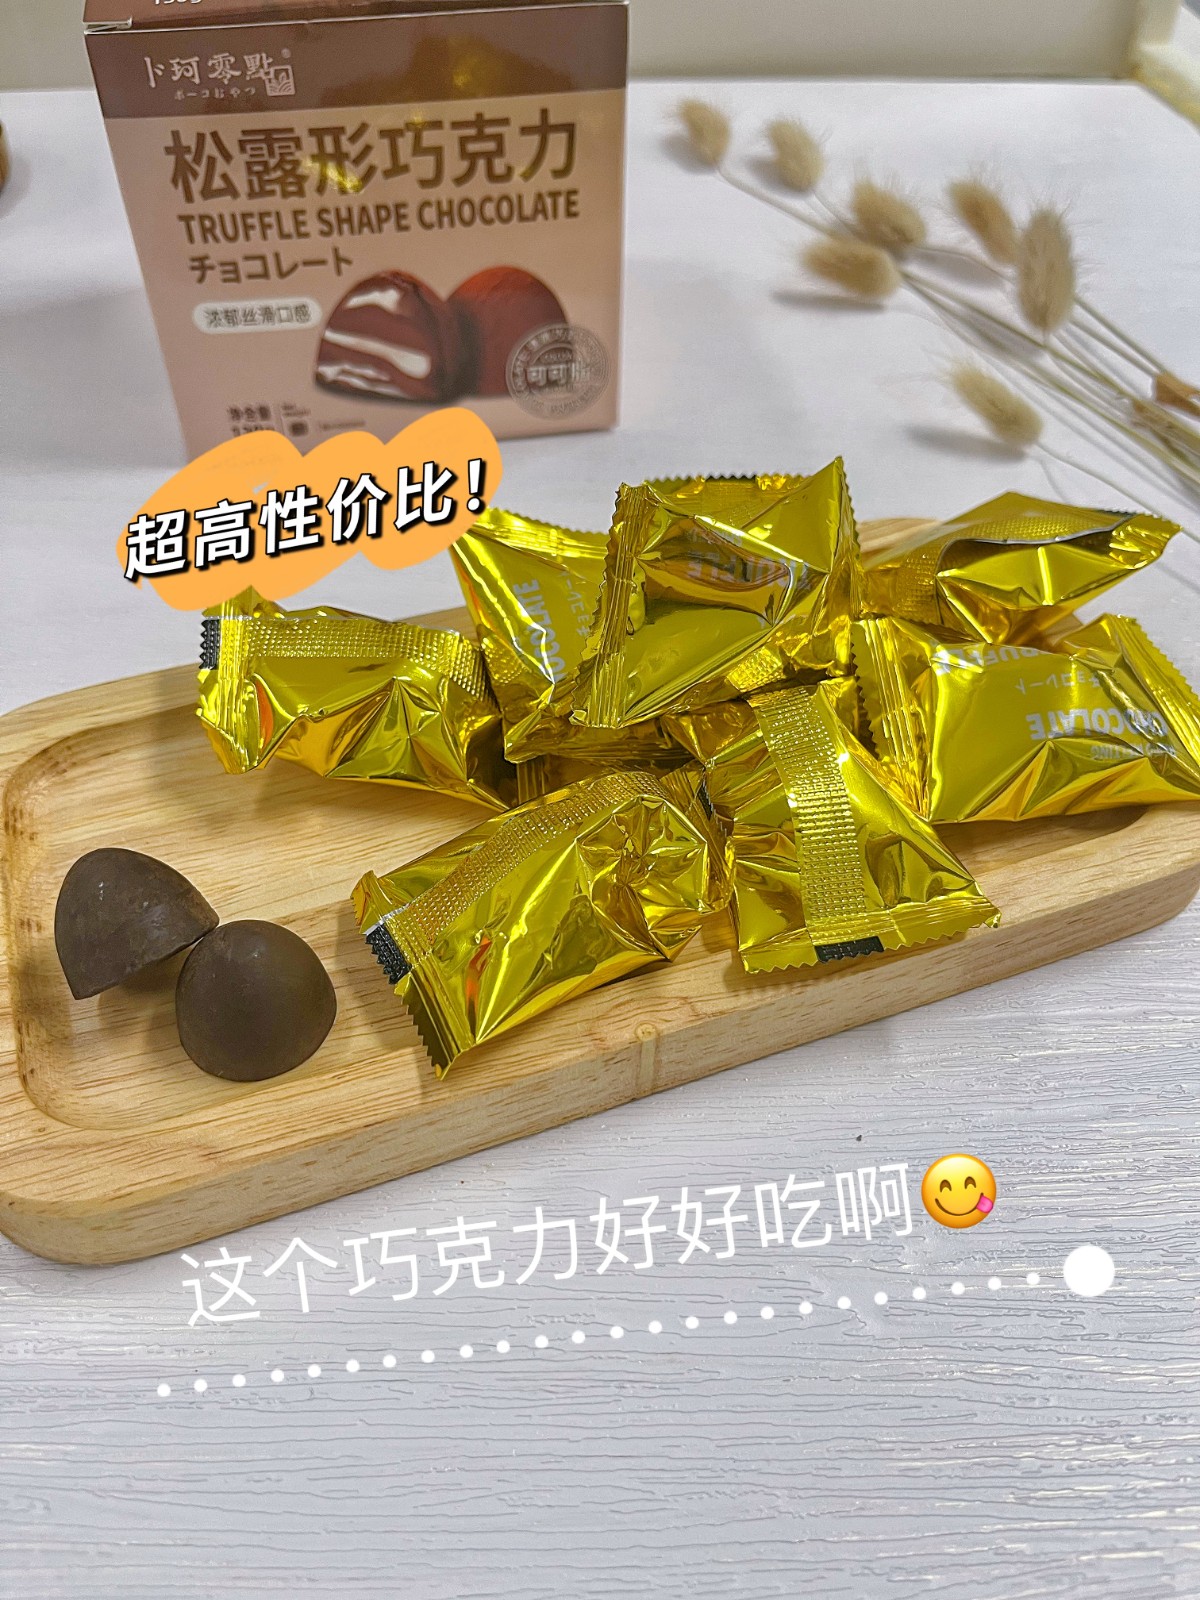 卜珂松露形纯脂黑巧克力零食网红礼品两款礼物盒装下午茶甜品零食